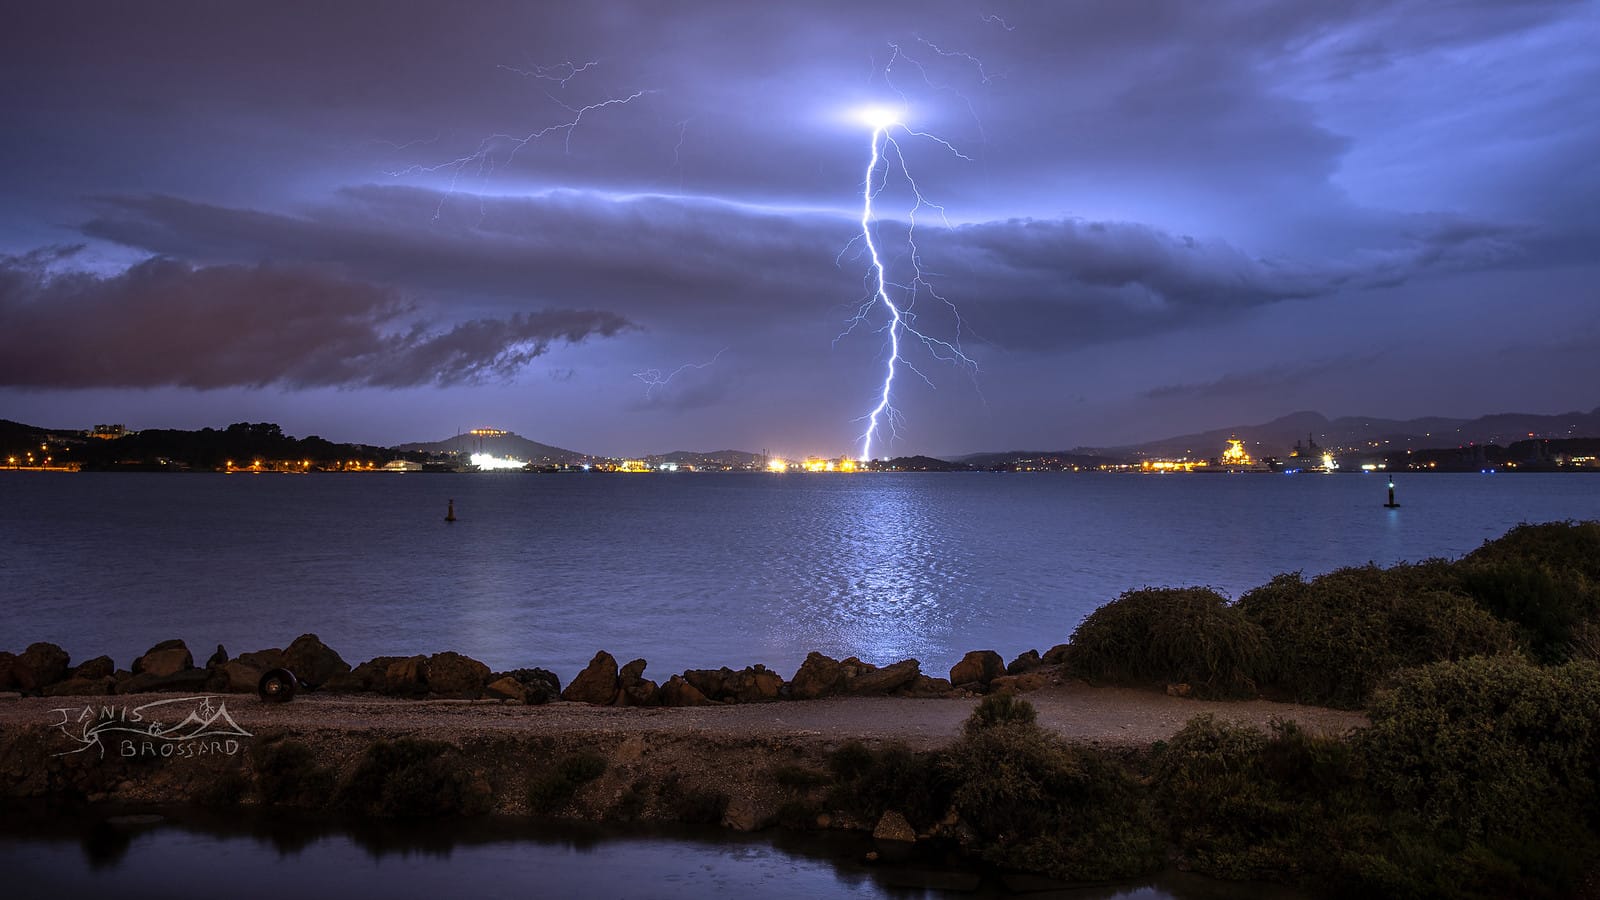 Perturbation orageuse qui aborde la métropole Toulonnaise, nous gratifiant ainsi du dernier sursaut électrique avec cet impact de foudre ramifié ! - 20/10/2019 23:20 - Janis Brossard